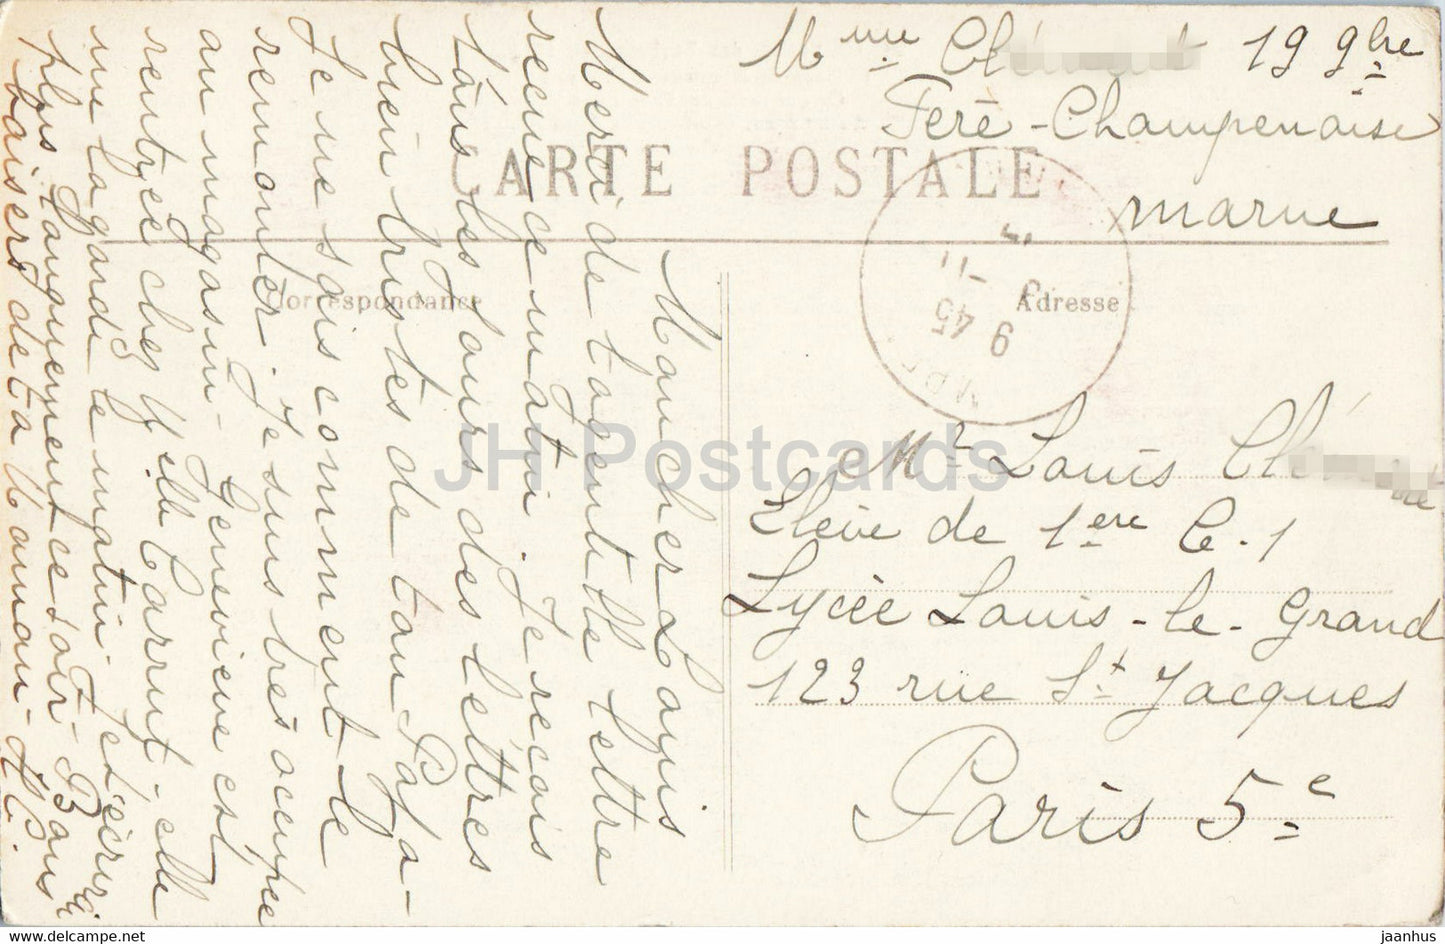 Château de Mondement - Ce qui reste des Communs - L'Invasion des Barbares en 1914 - 21 - carte postale ancienne - France - utilisé